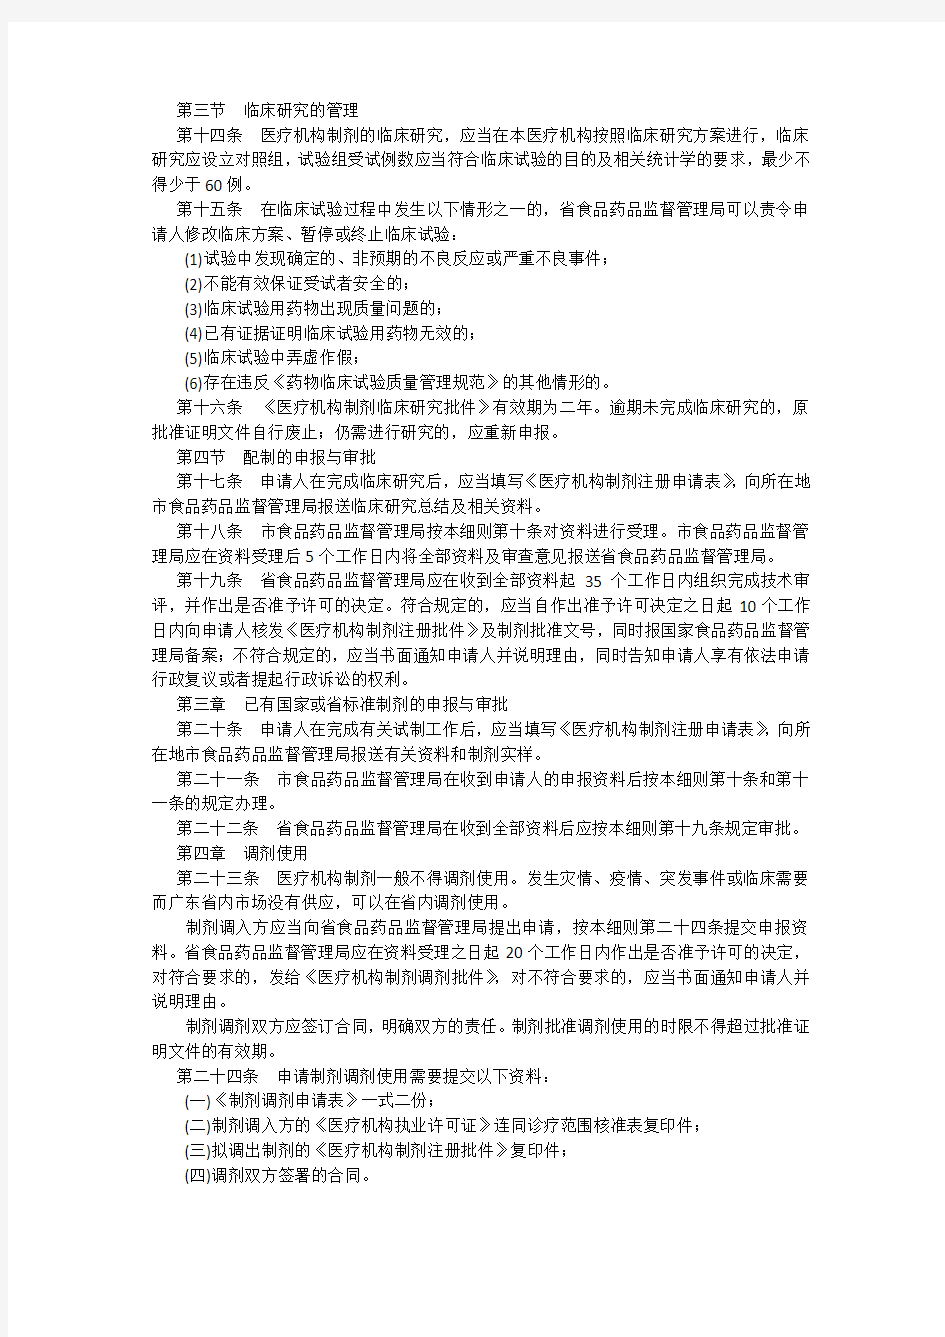 广东省食品药品监督管理局医疗机构制剂注册管理办法